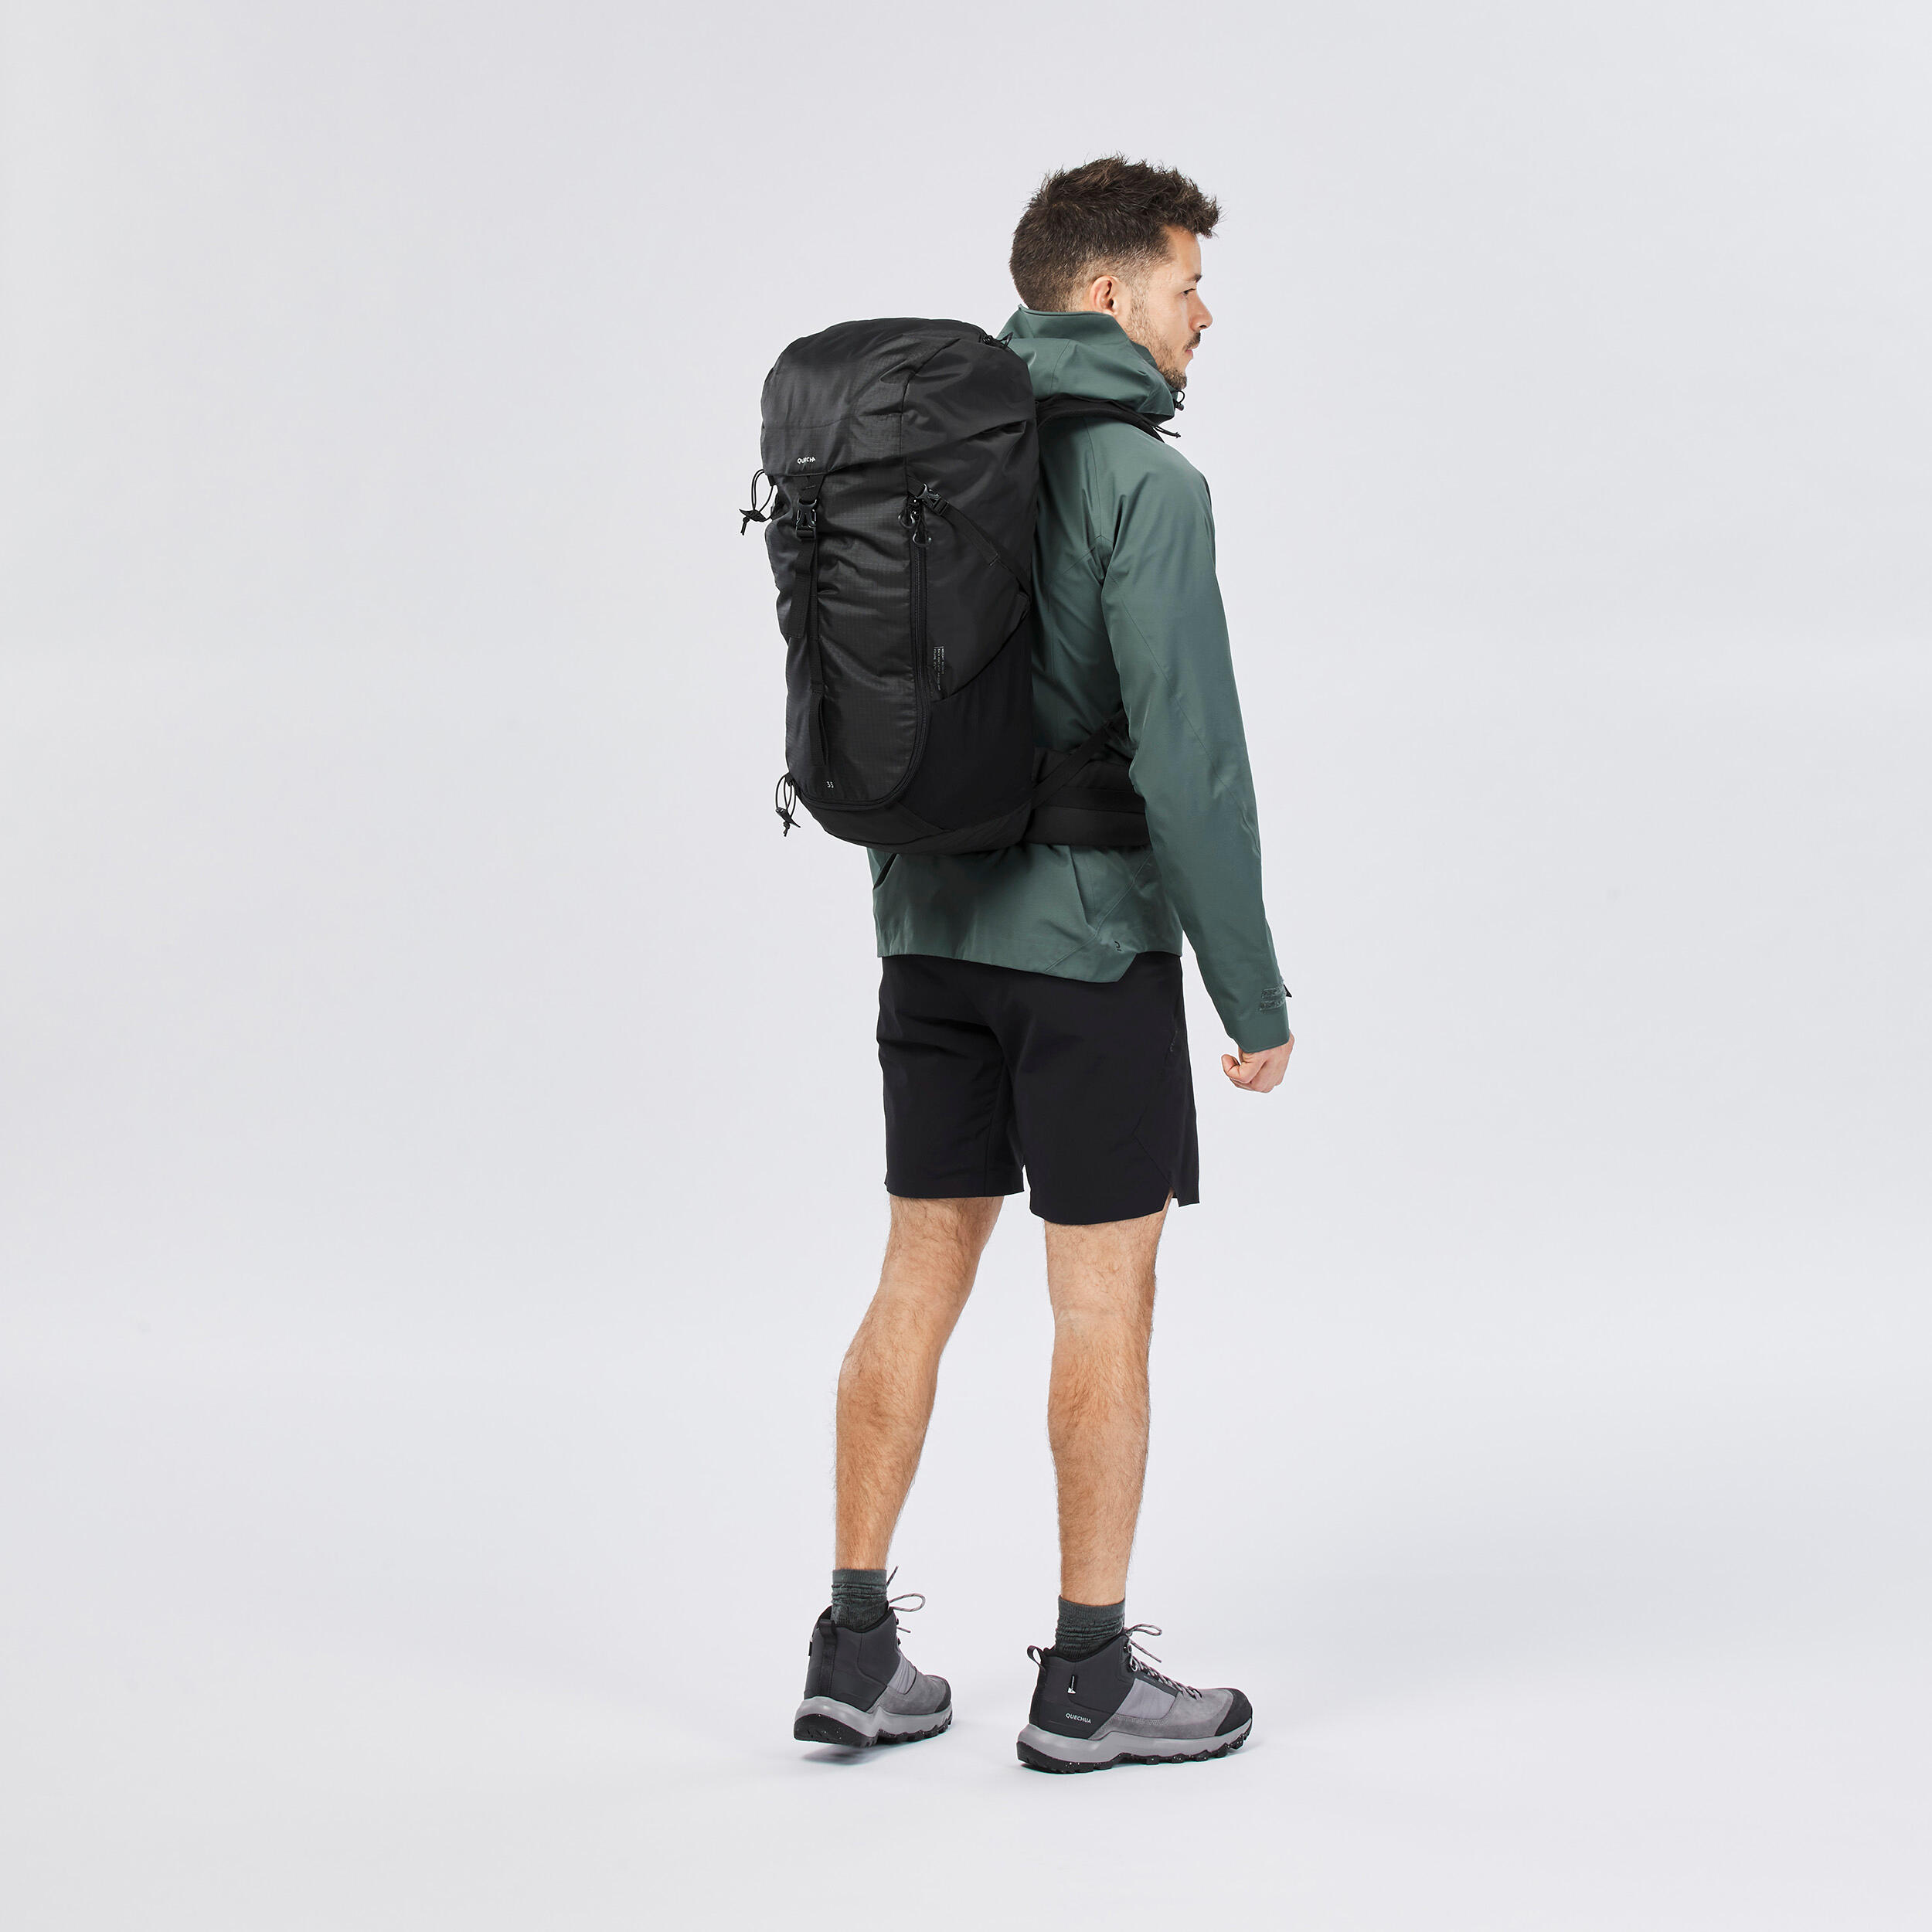 35 L Hiking Backpack - MH 100 Black